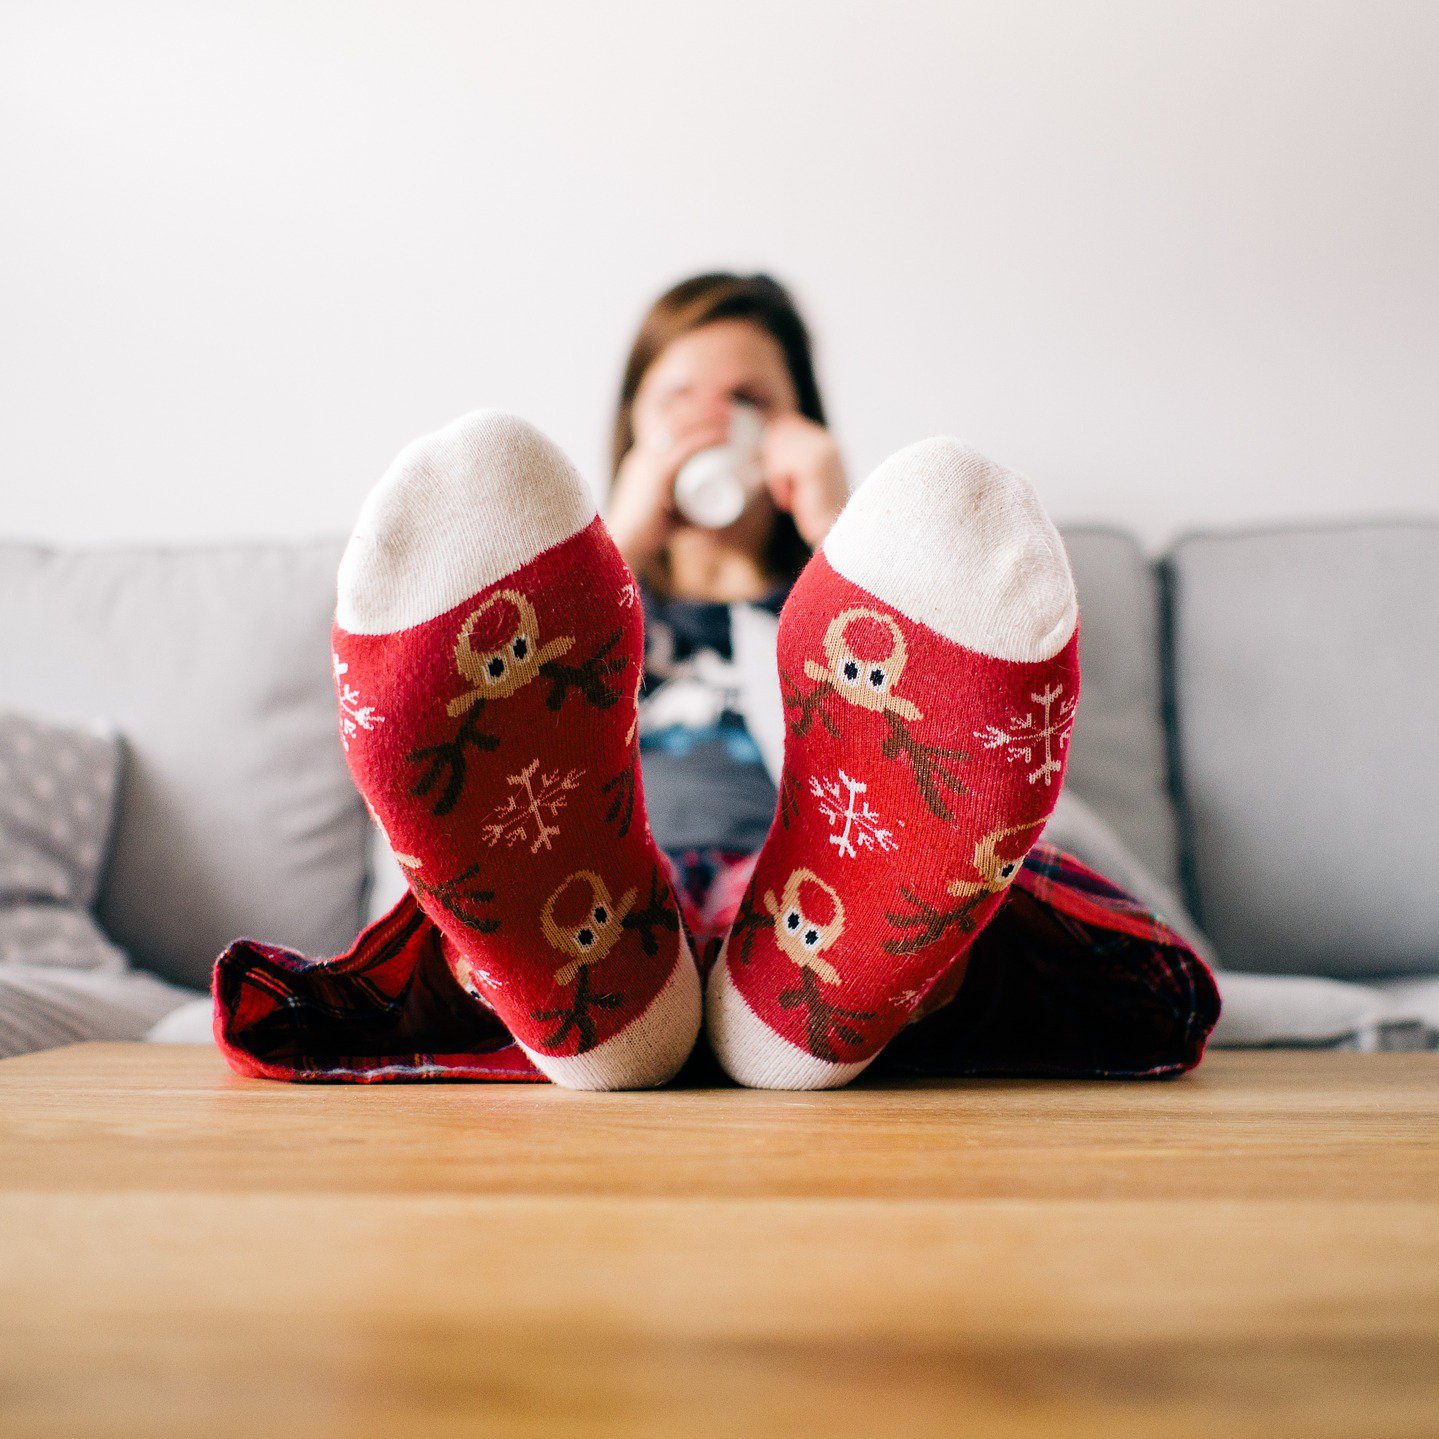 Frau auf Couch mit bunten Weihnachtssocken